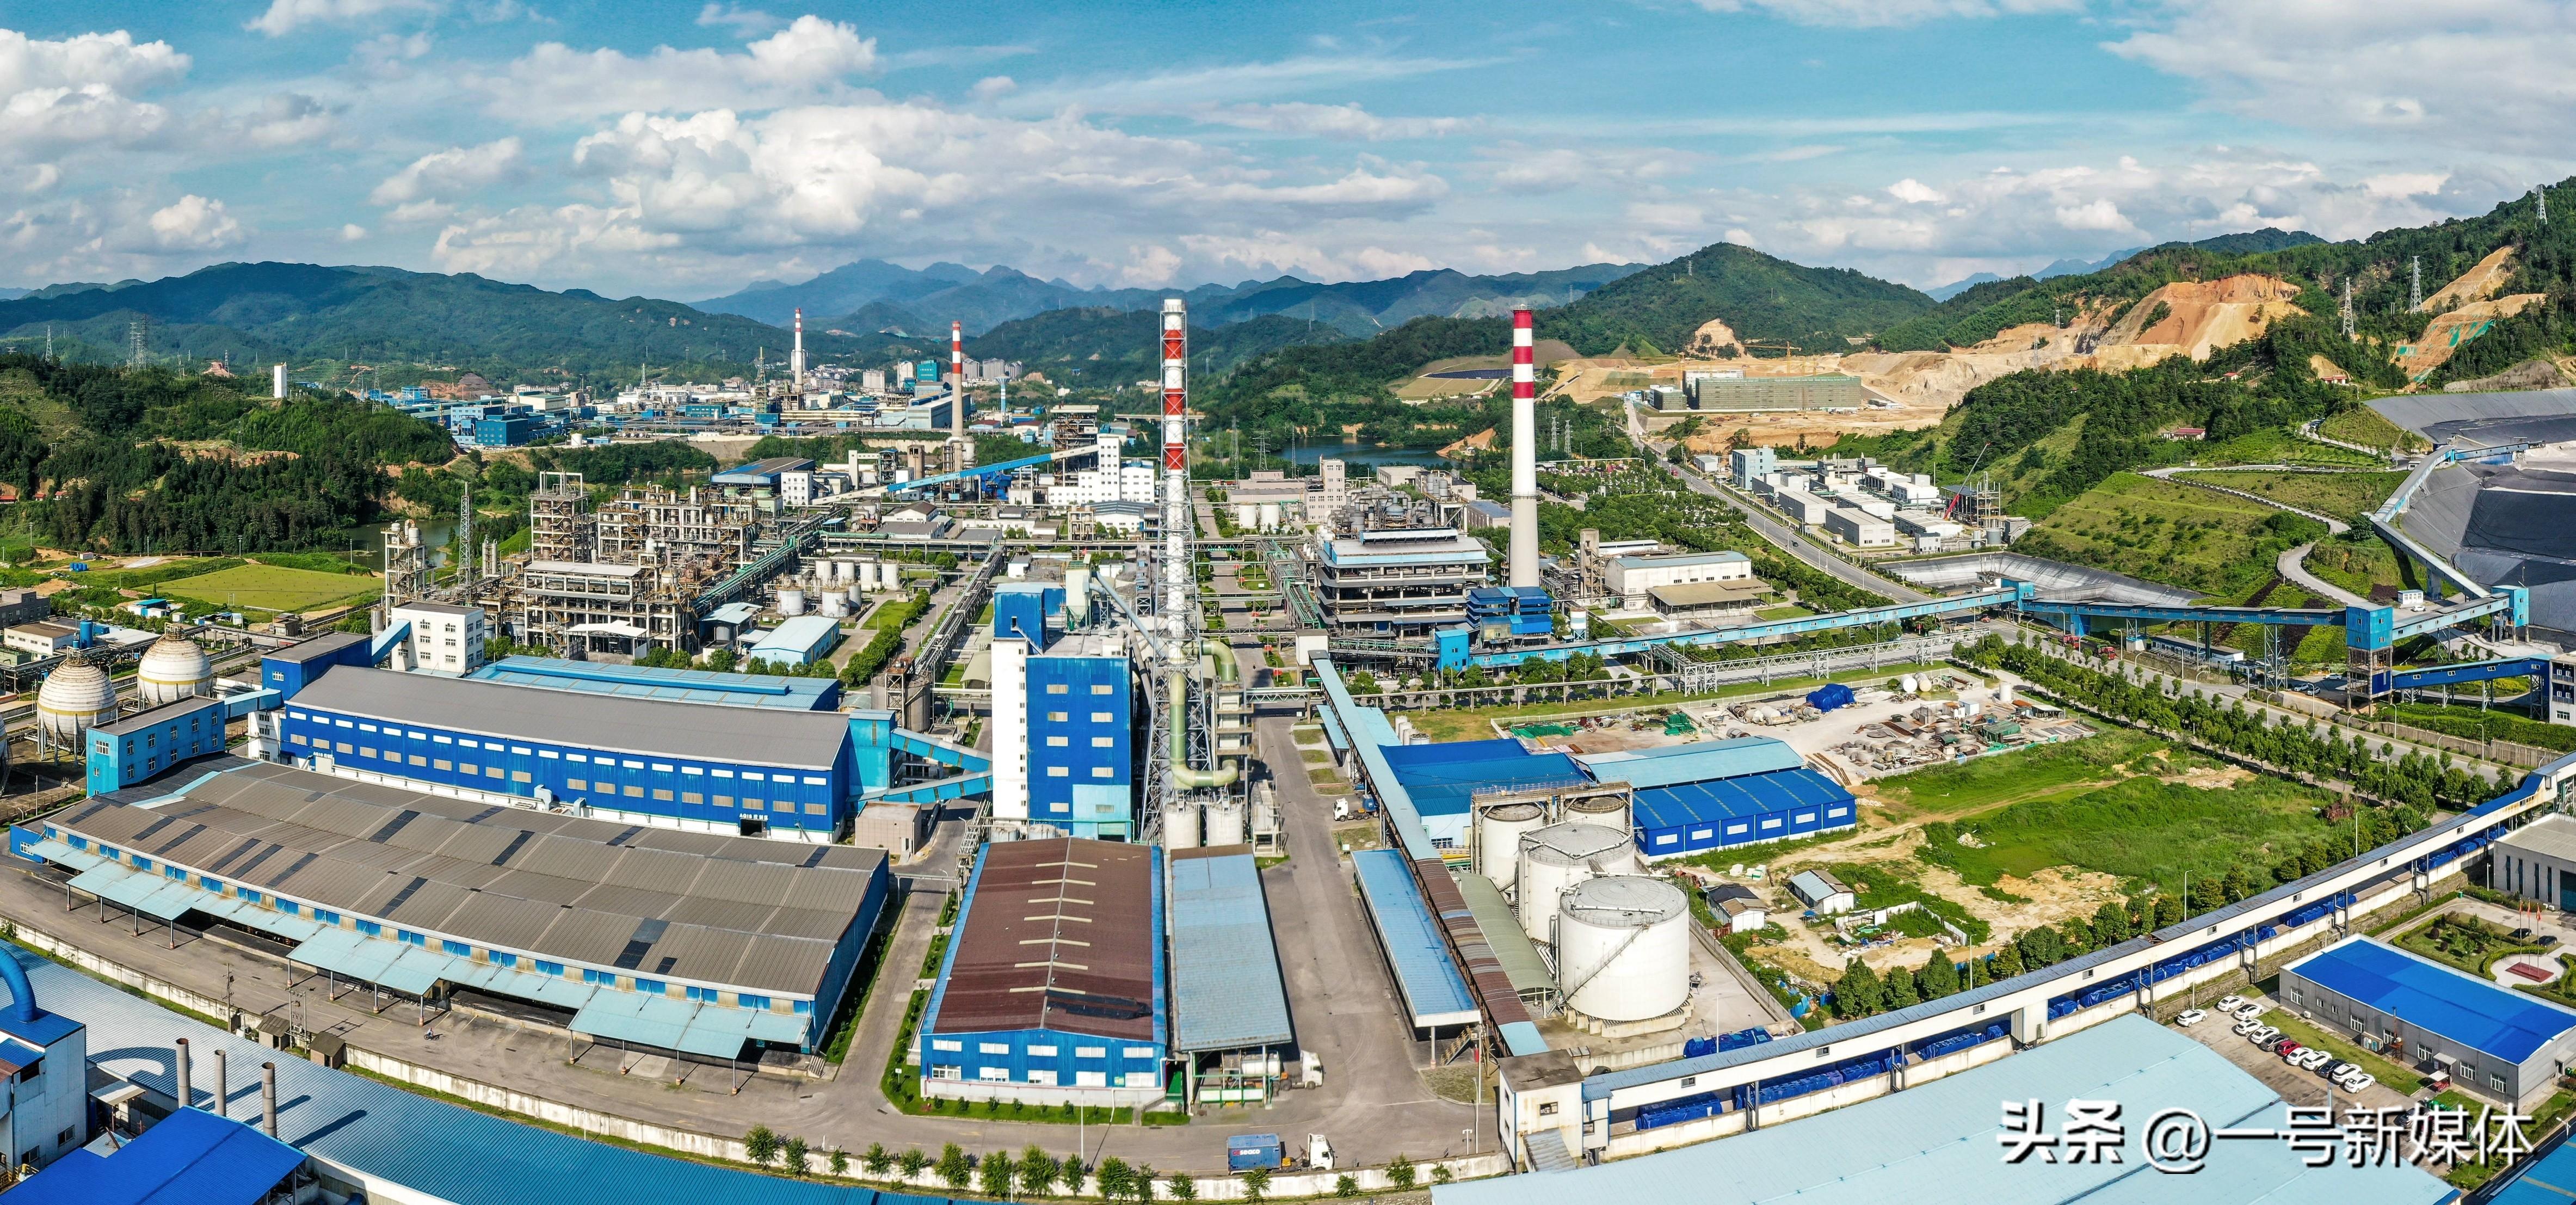 奋力打造全球磷化工领军企业 中化企协调研组来到贵州磷化集团